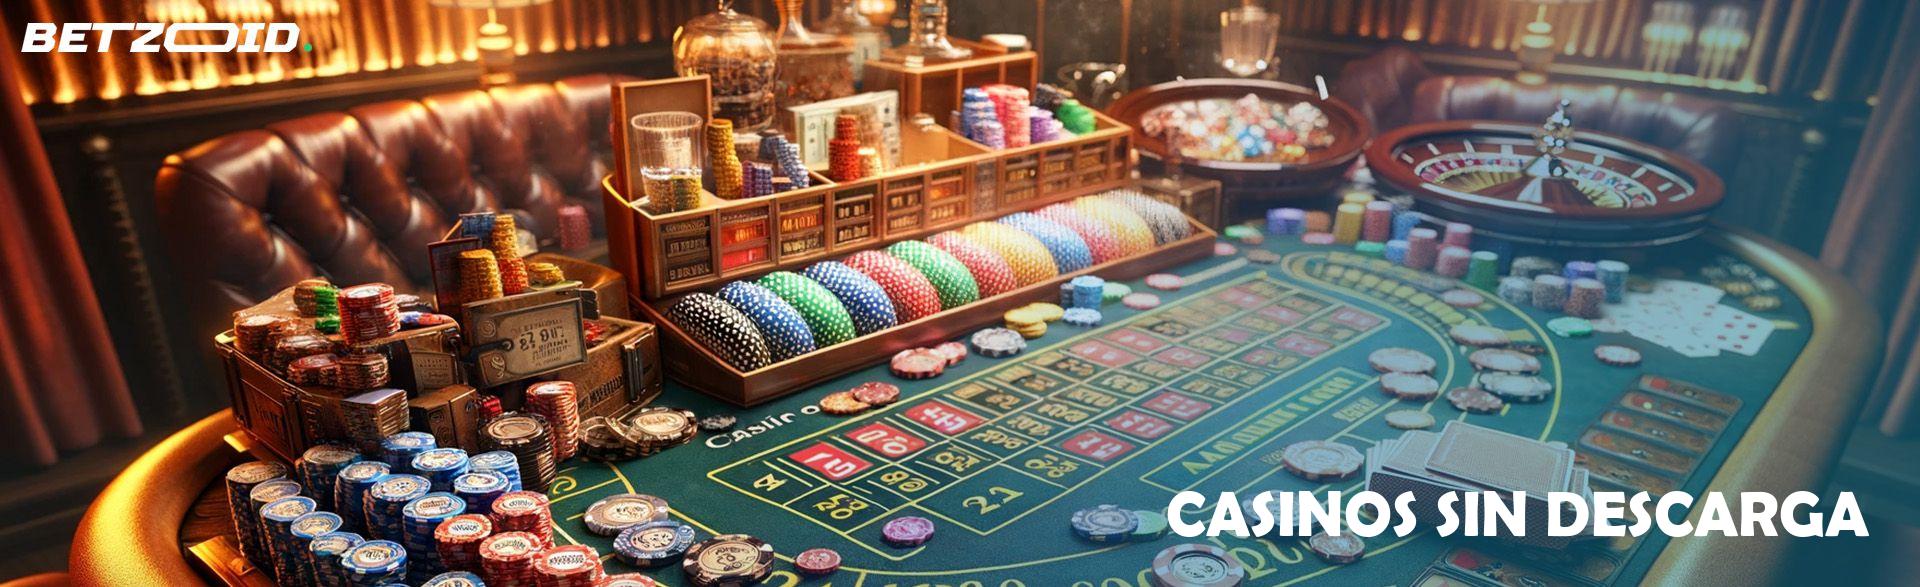 Casinos Sin Descarga.